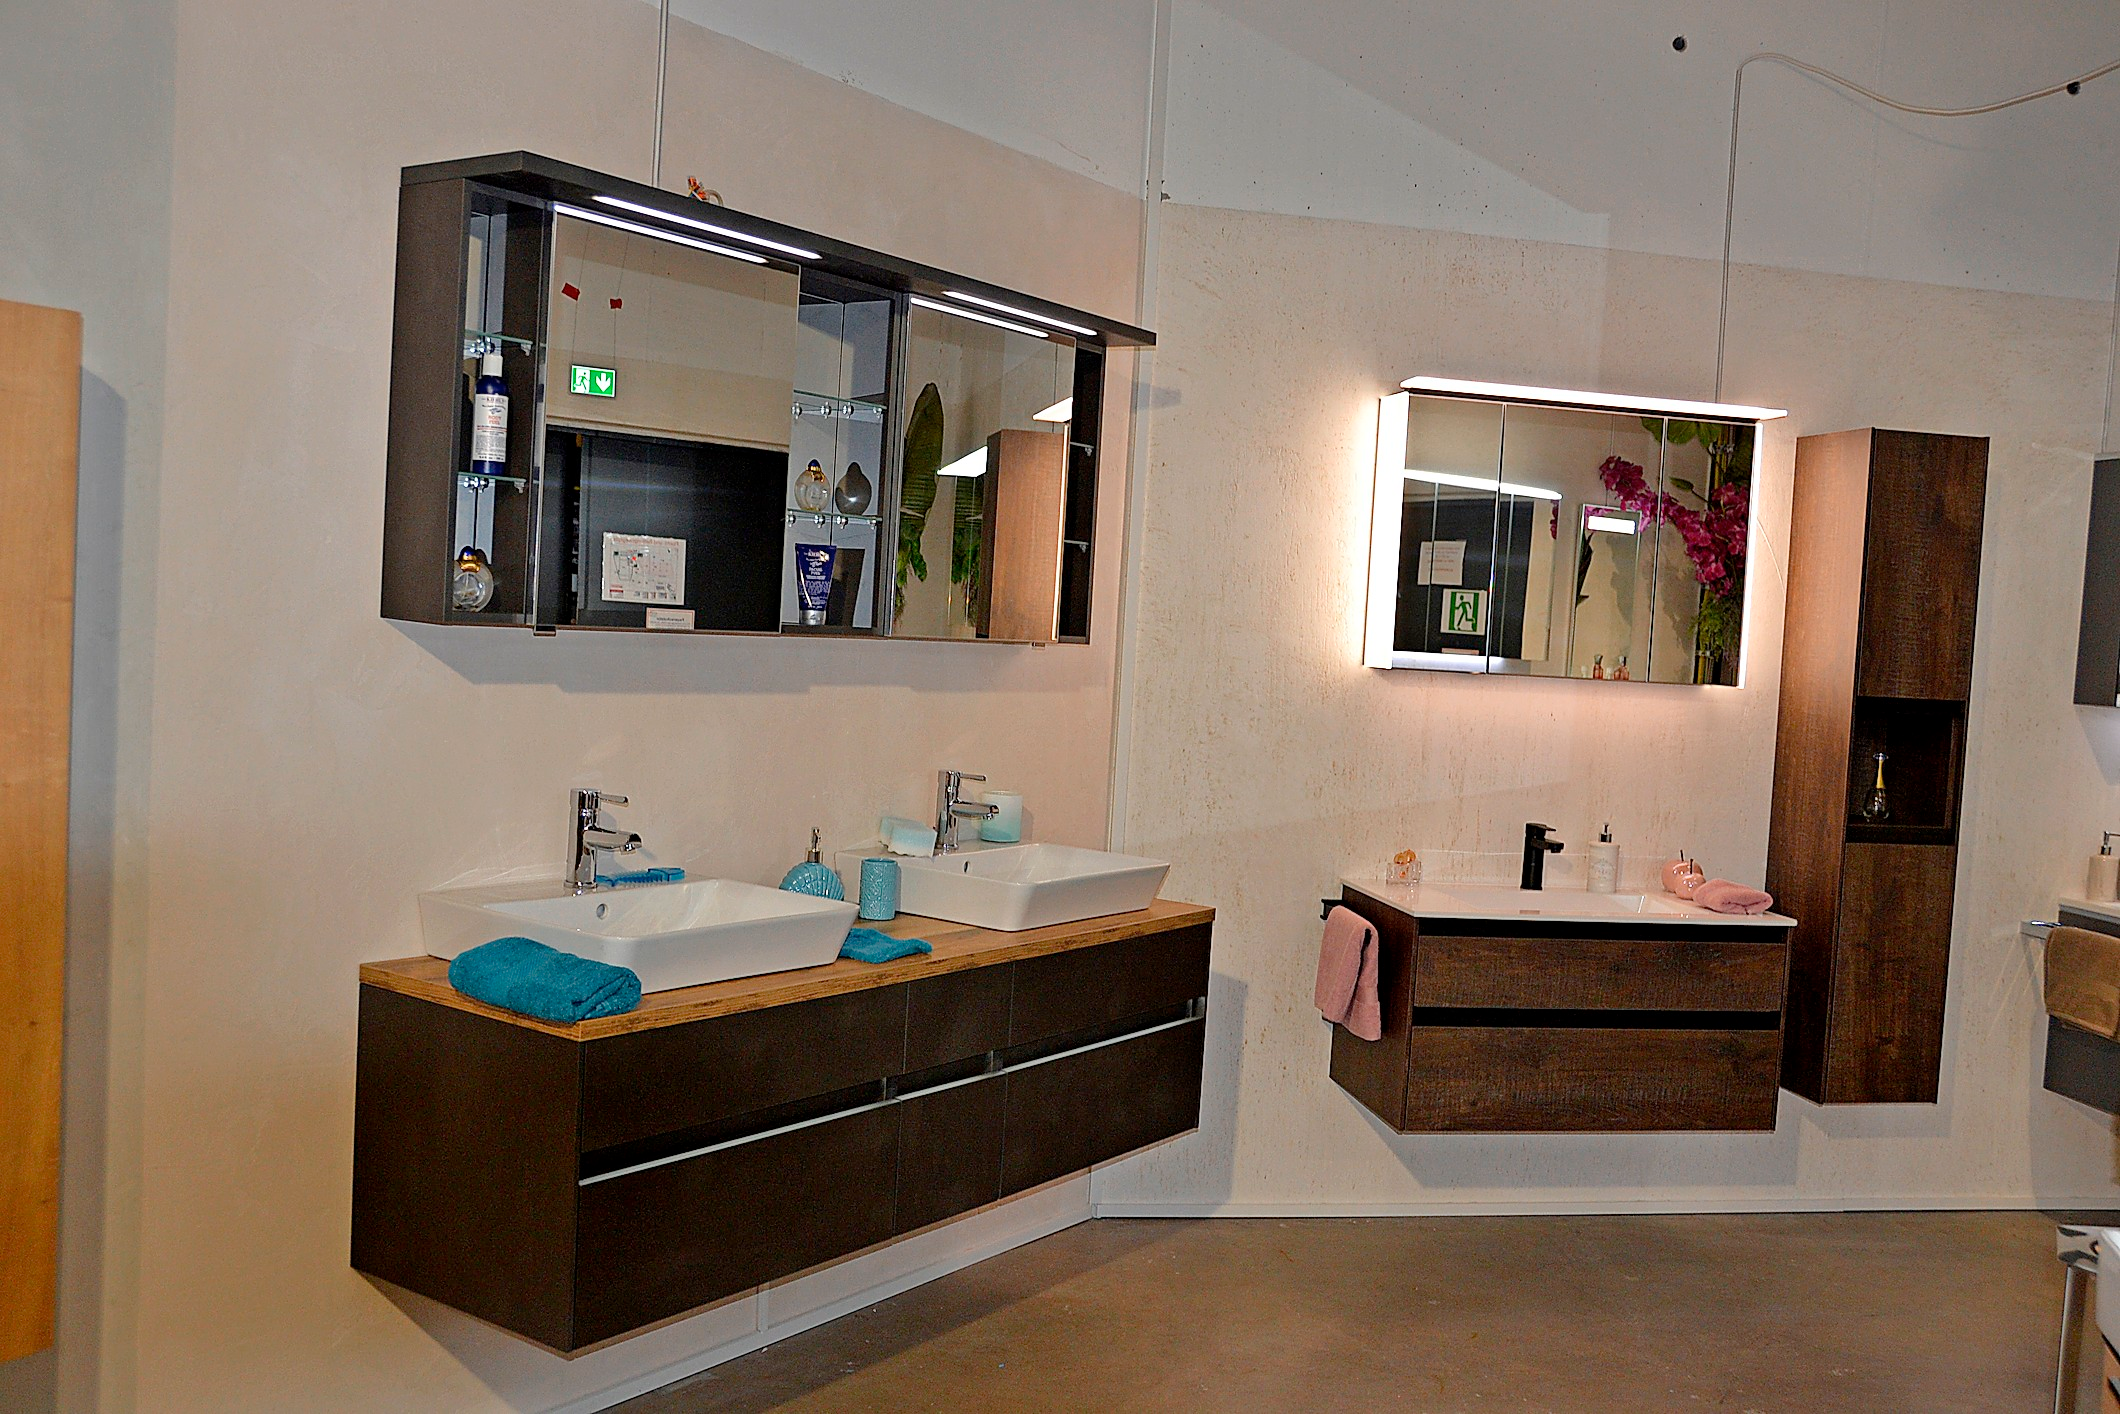 Moderne Badezimmermöbel sind in der Ausstellung zu sehen.